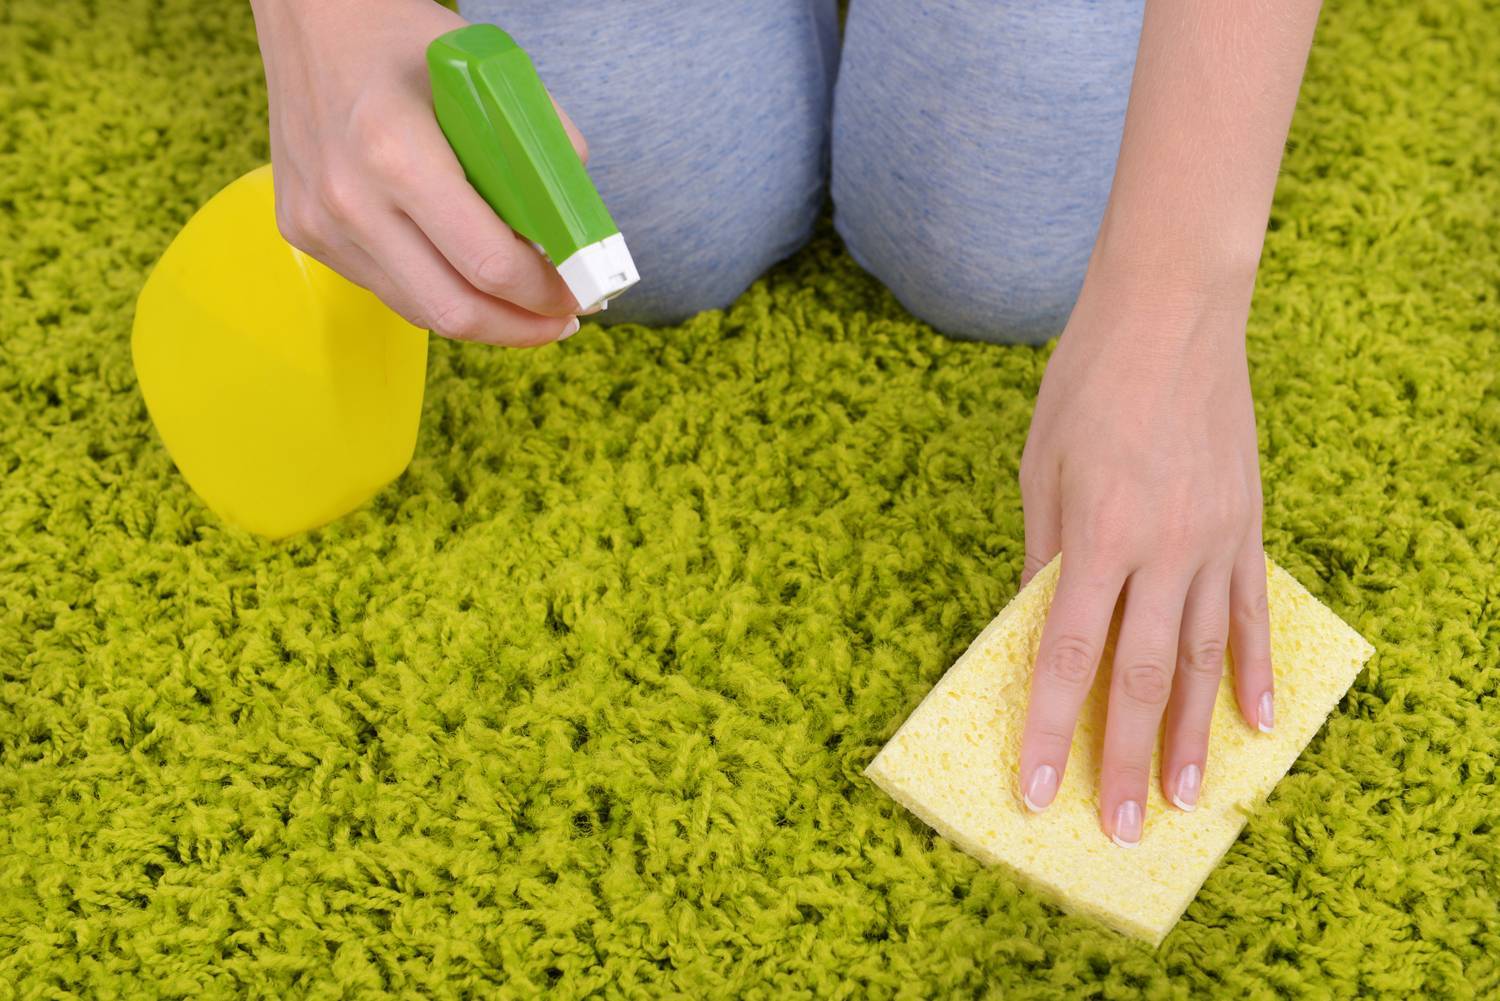 Как избавиться от запаха на ковре от мочи ребенка в домашних условиях: чем почистить поверхности?